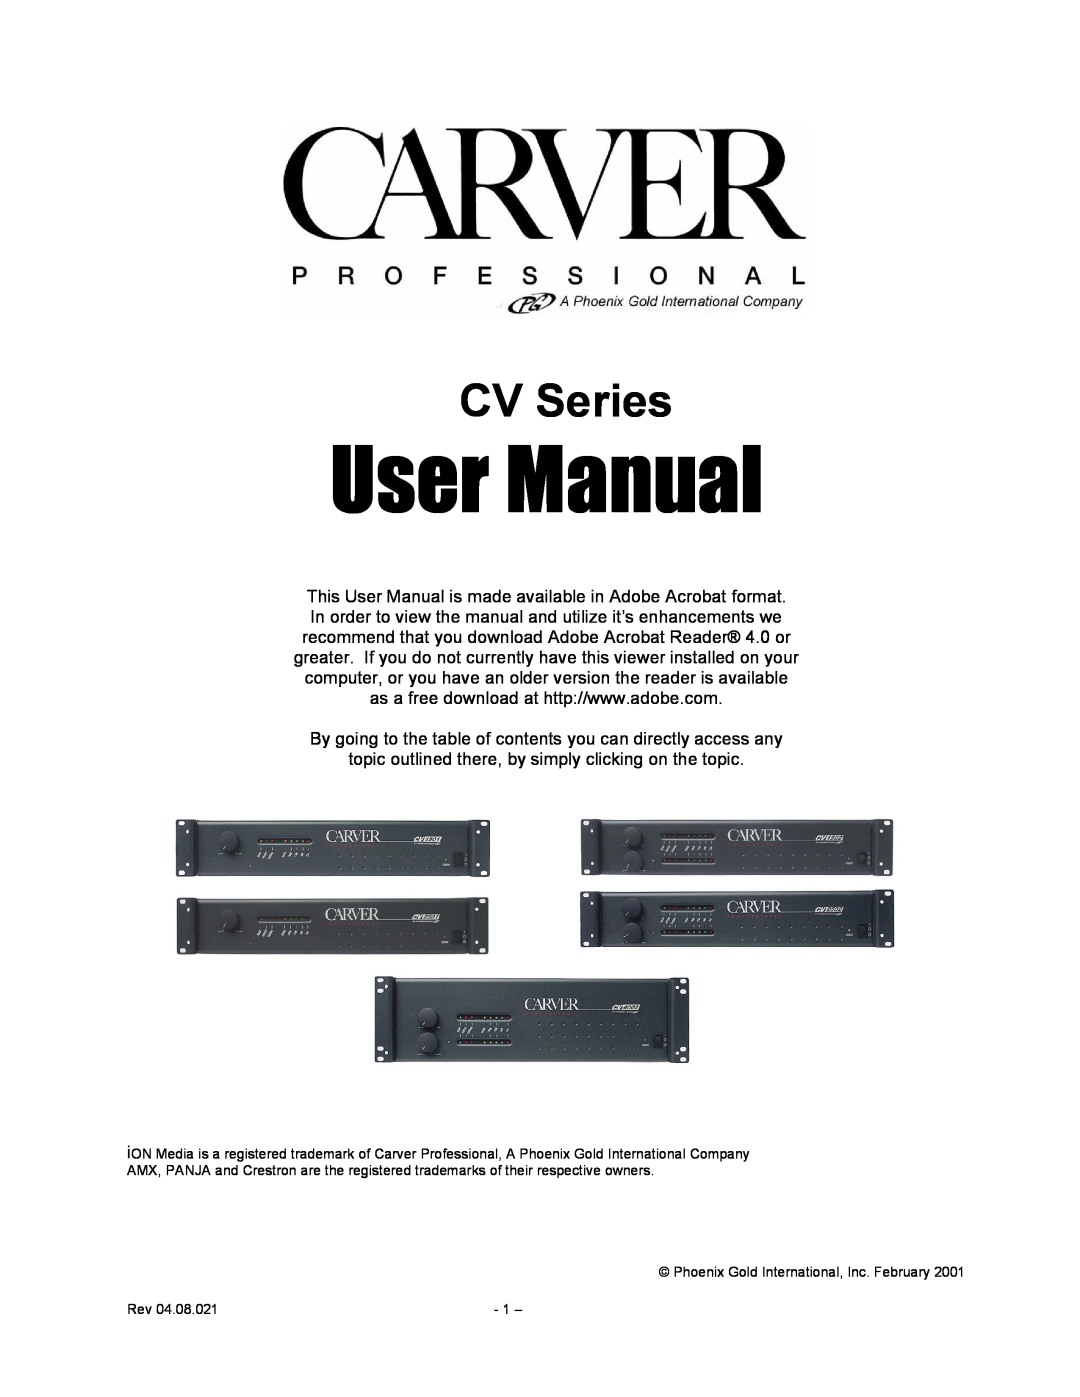 Carver CV Series user manual 